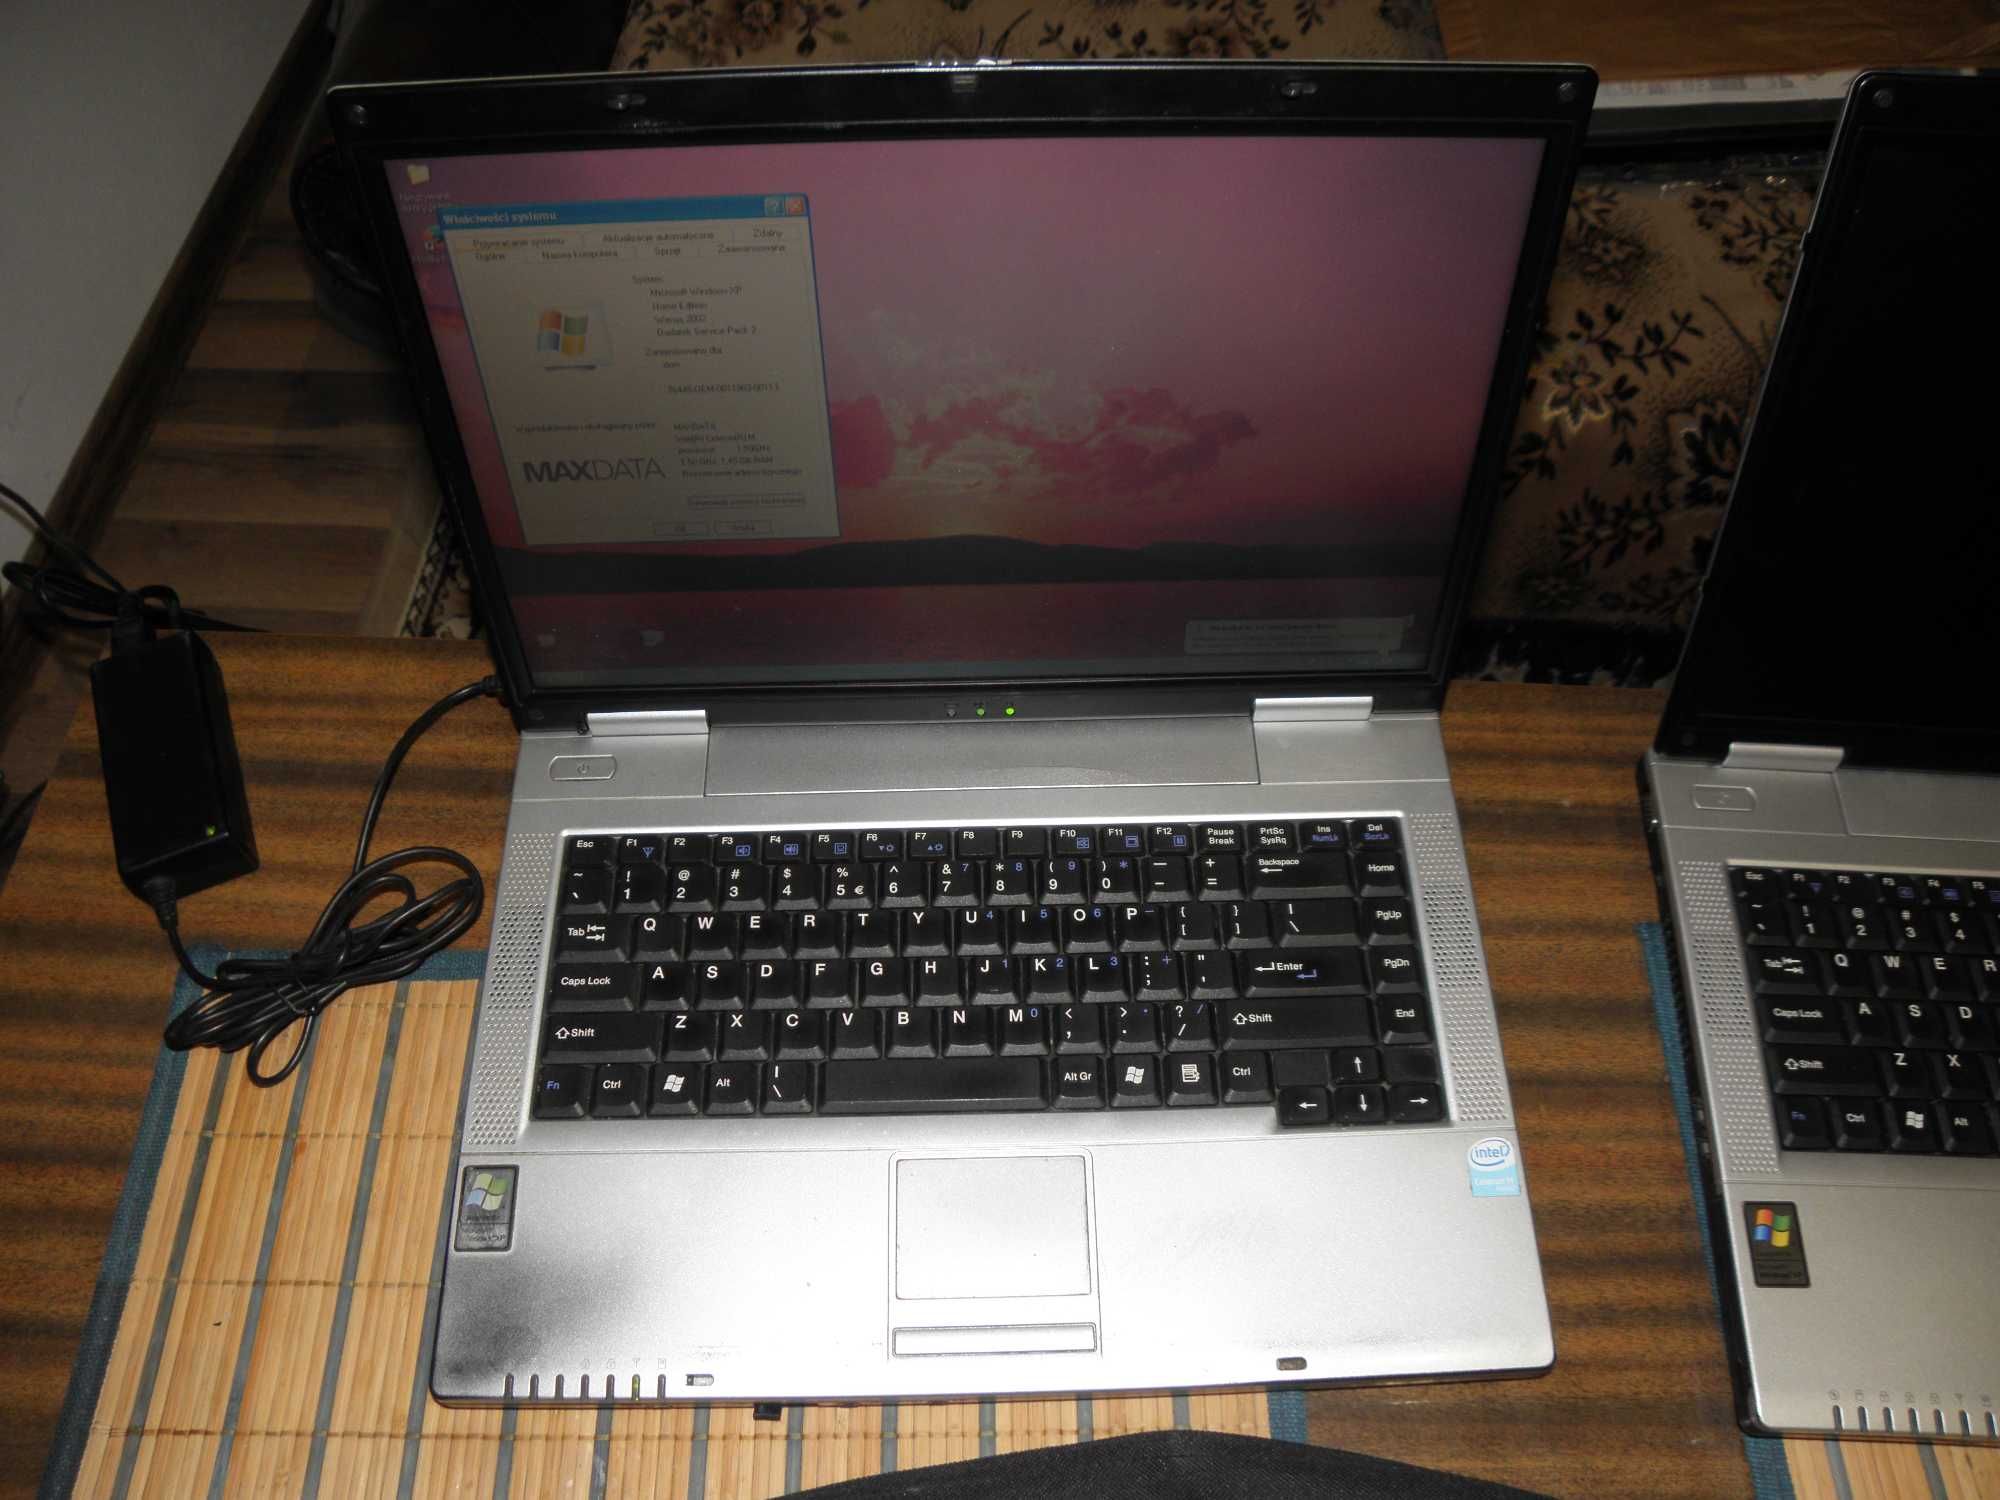 2x laptop Maxdata ECO4000IW + torba